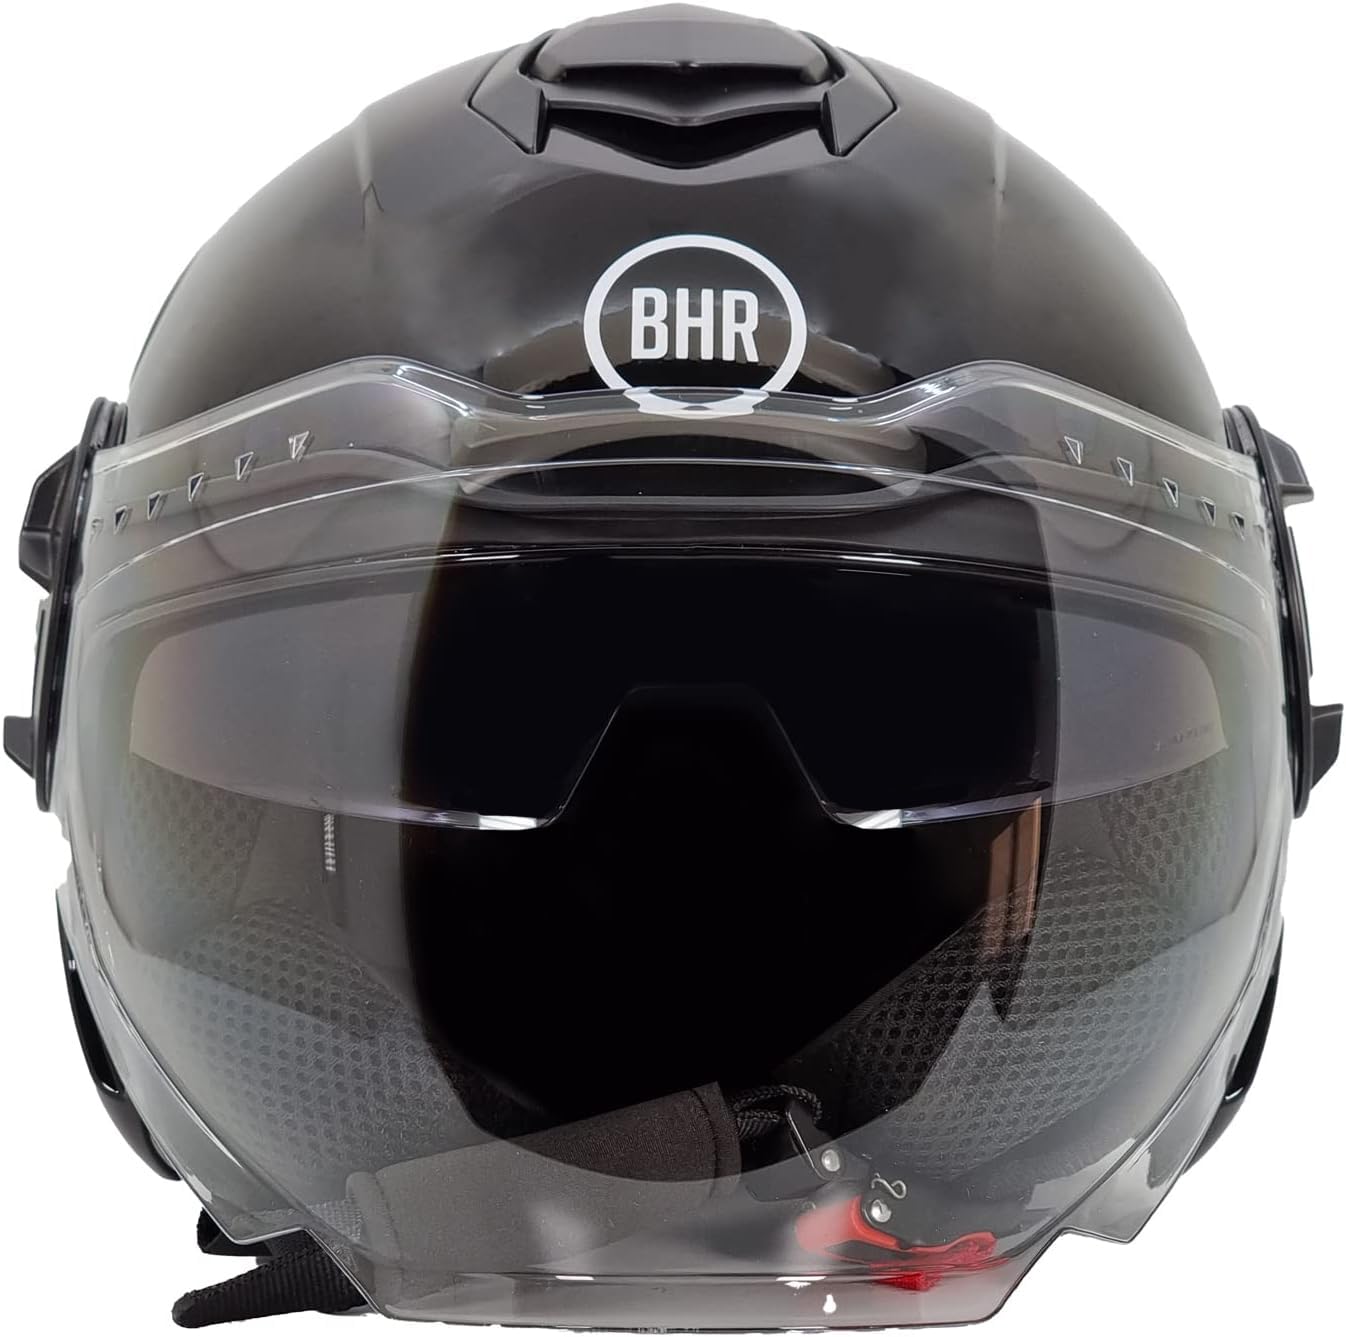 BHR Jet Helm Double Visor 830 FLASH, Scooter Helm mit ECE 22.06 Zulassung, Leichter & komfortabler Jet Helm mit innenliegender Sonnenblende, Metallisch schwarz, M